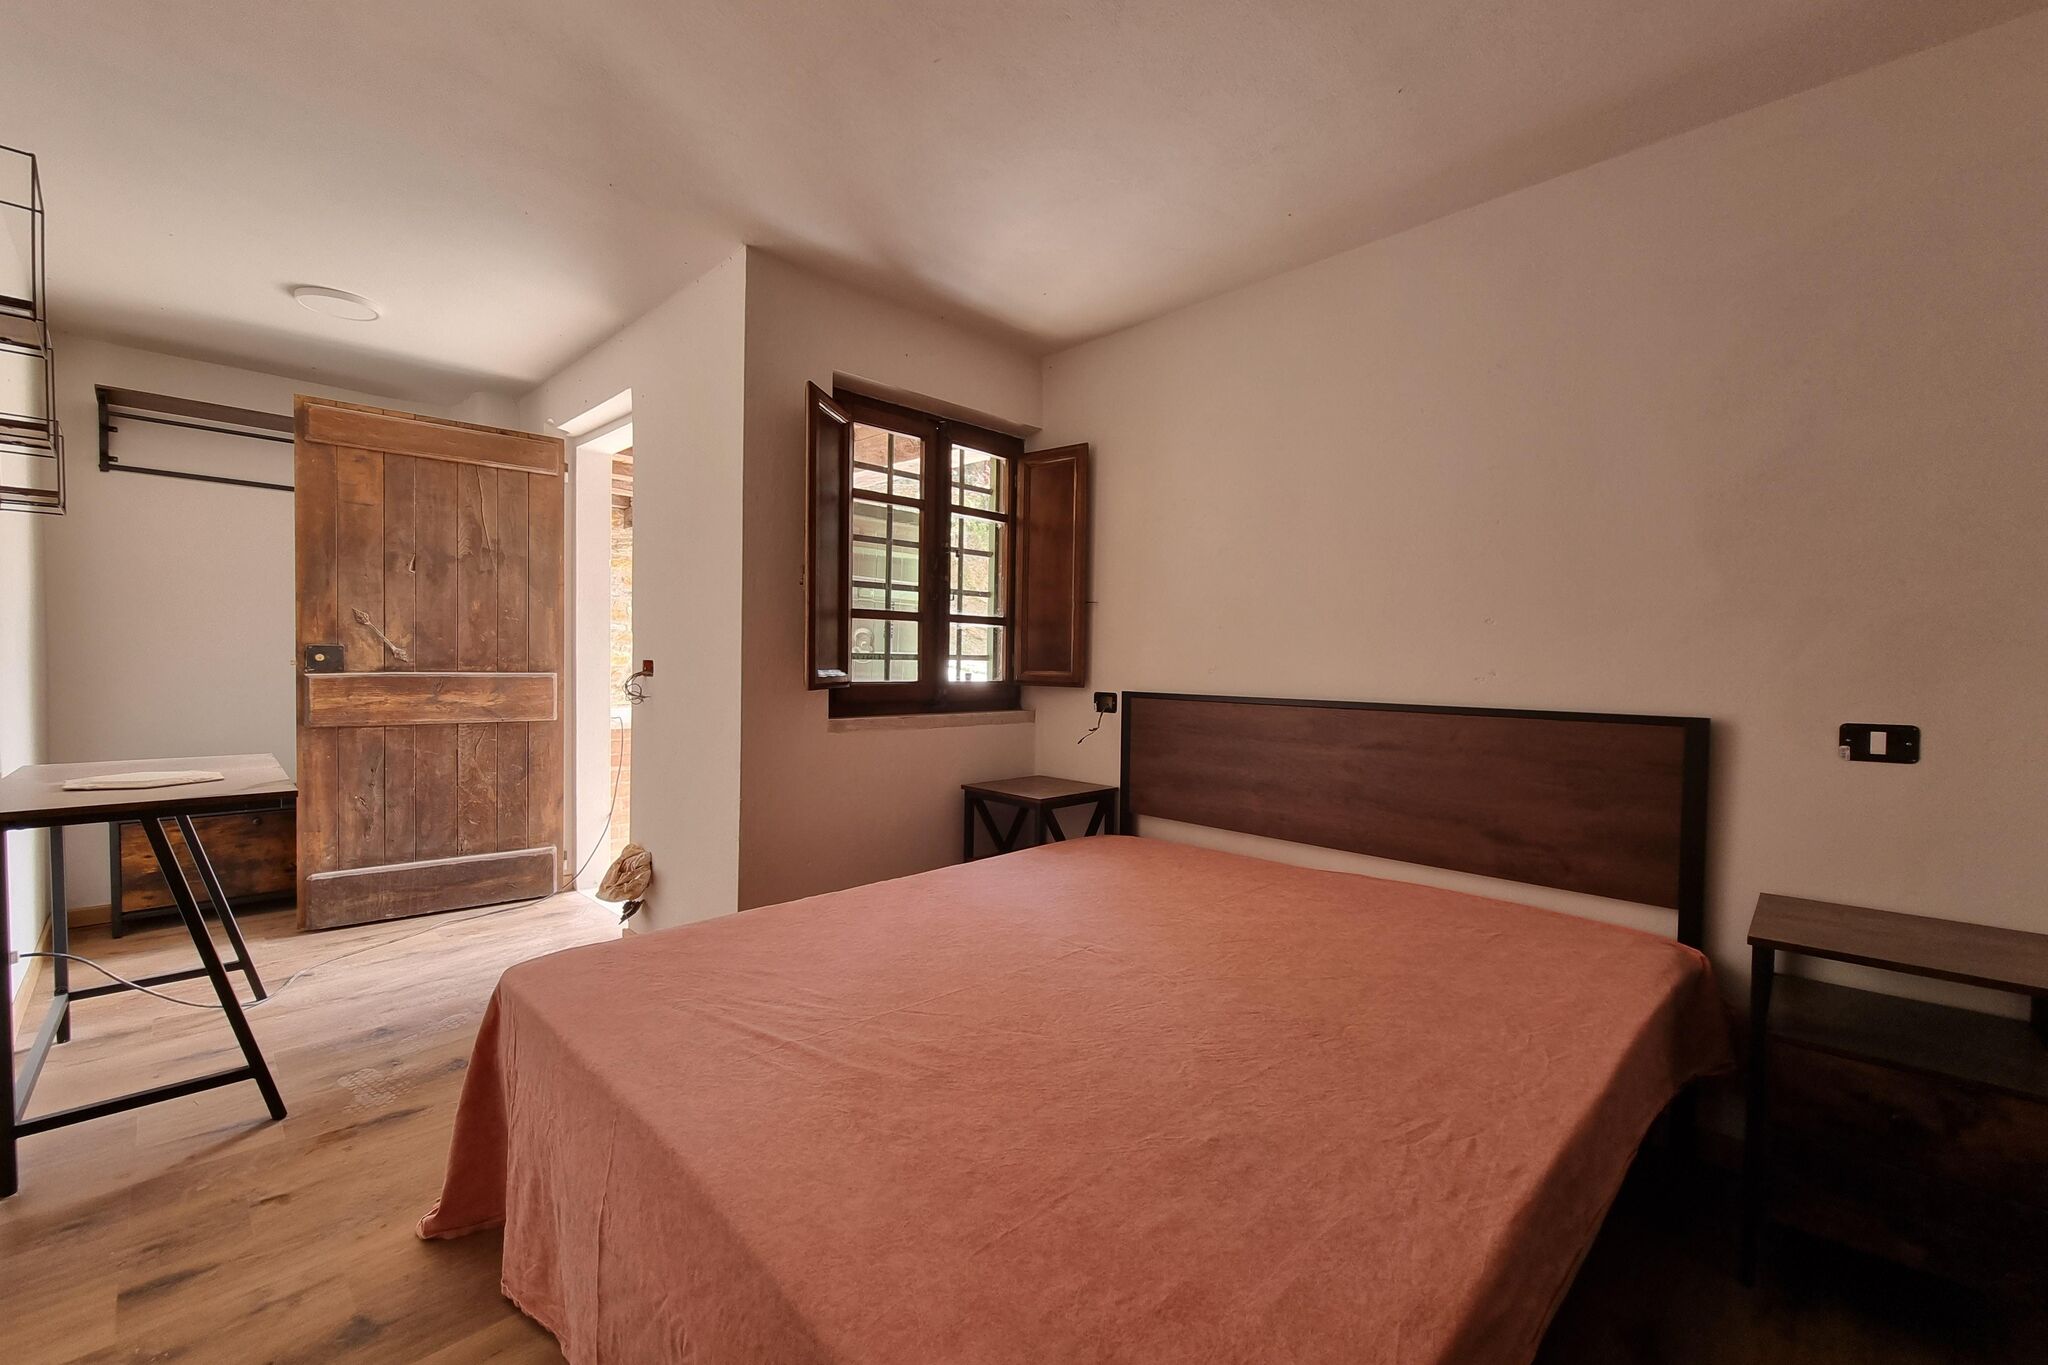 Attractive apartment in Pietrasanta with private garden